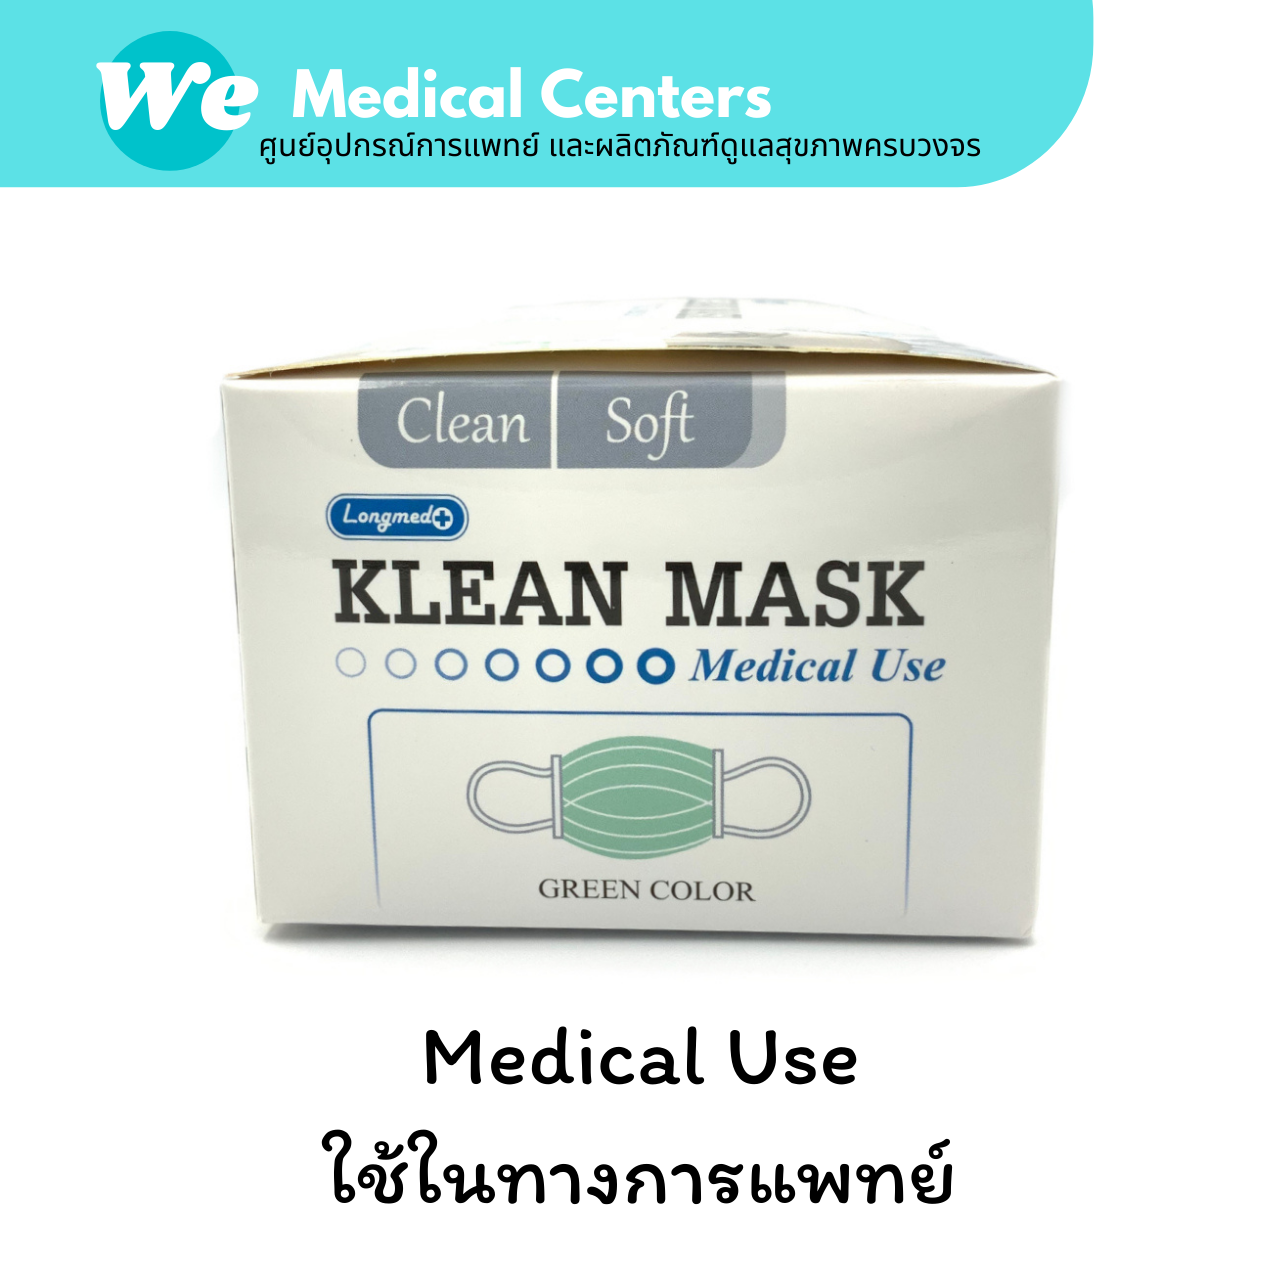 เกี่ยวกับ [ 2 กล่อง ]หน้ากากอนามัยทางการแพทย์ หน้ากากอนามัย Klean mask (Longmed) แมสทางการแพทย์ 2 กล่อง